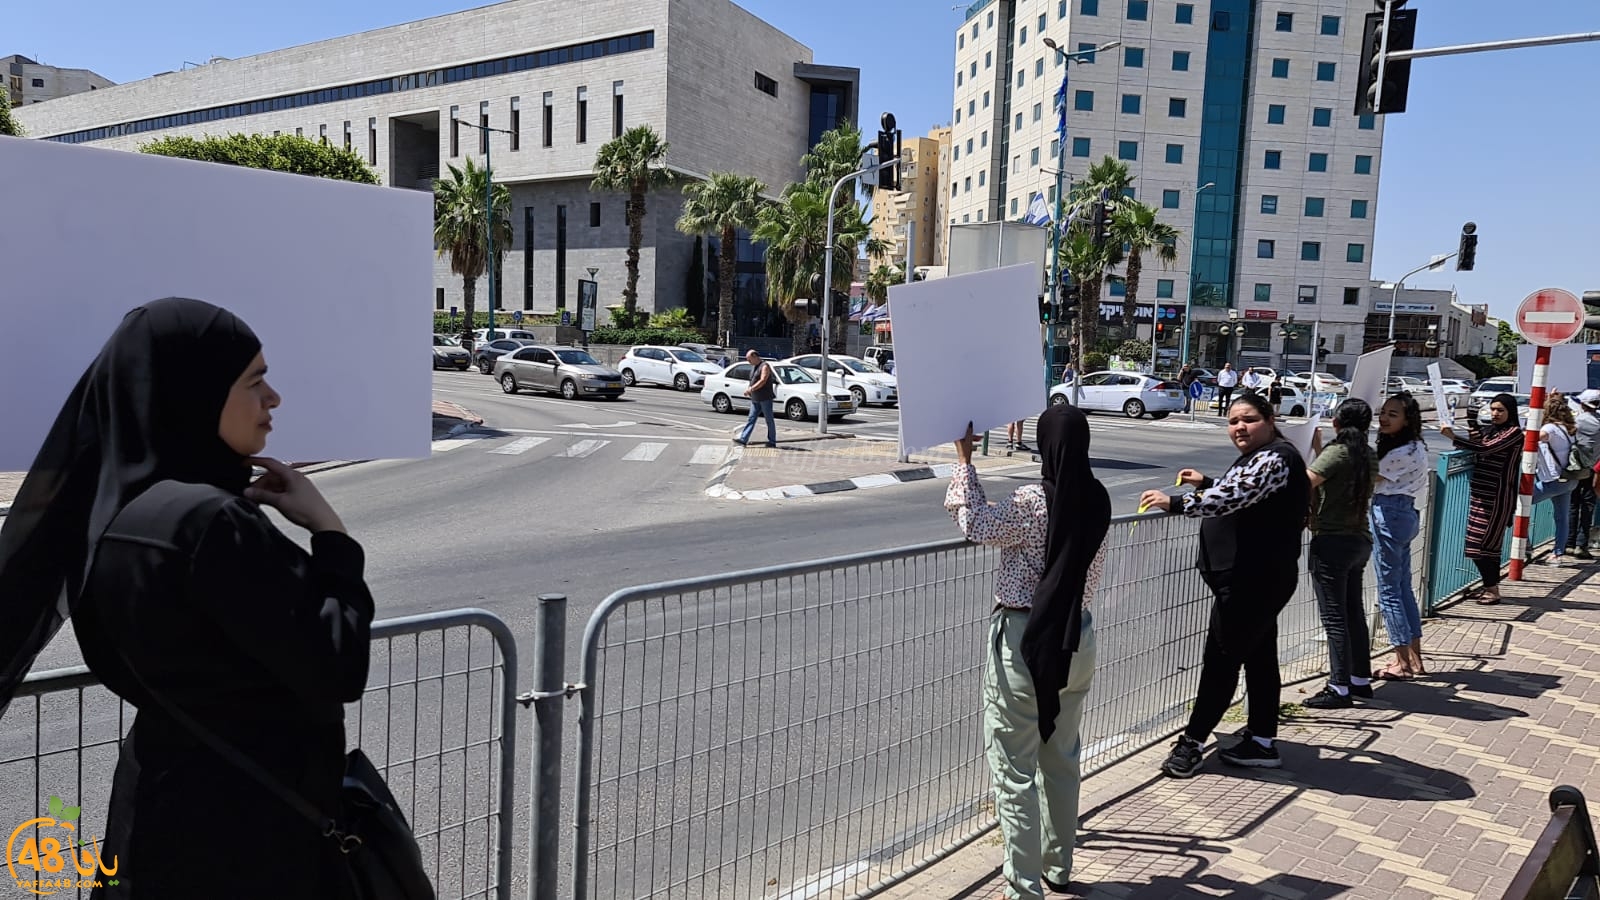 اللّد: العشرات يتظاهرون أمام المحكمة للمطالبة بإعتقال ومحاكمة قتلة الشهيد حسّونة